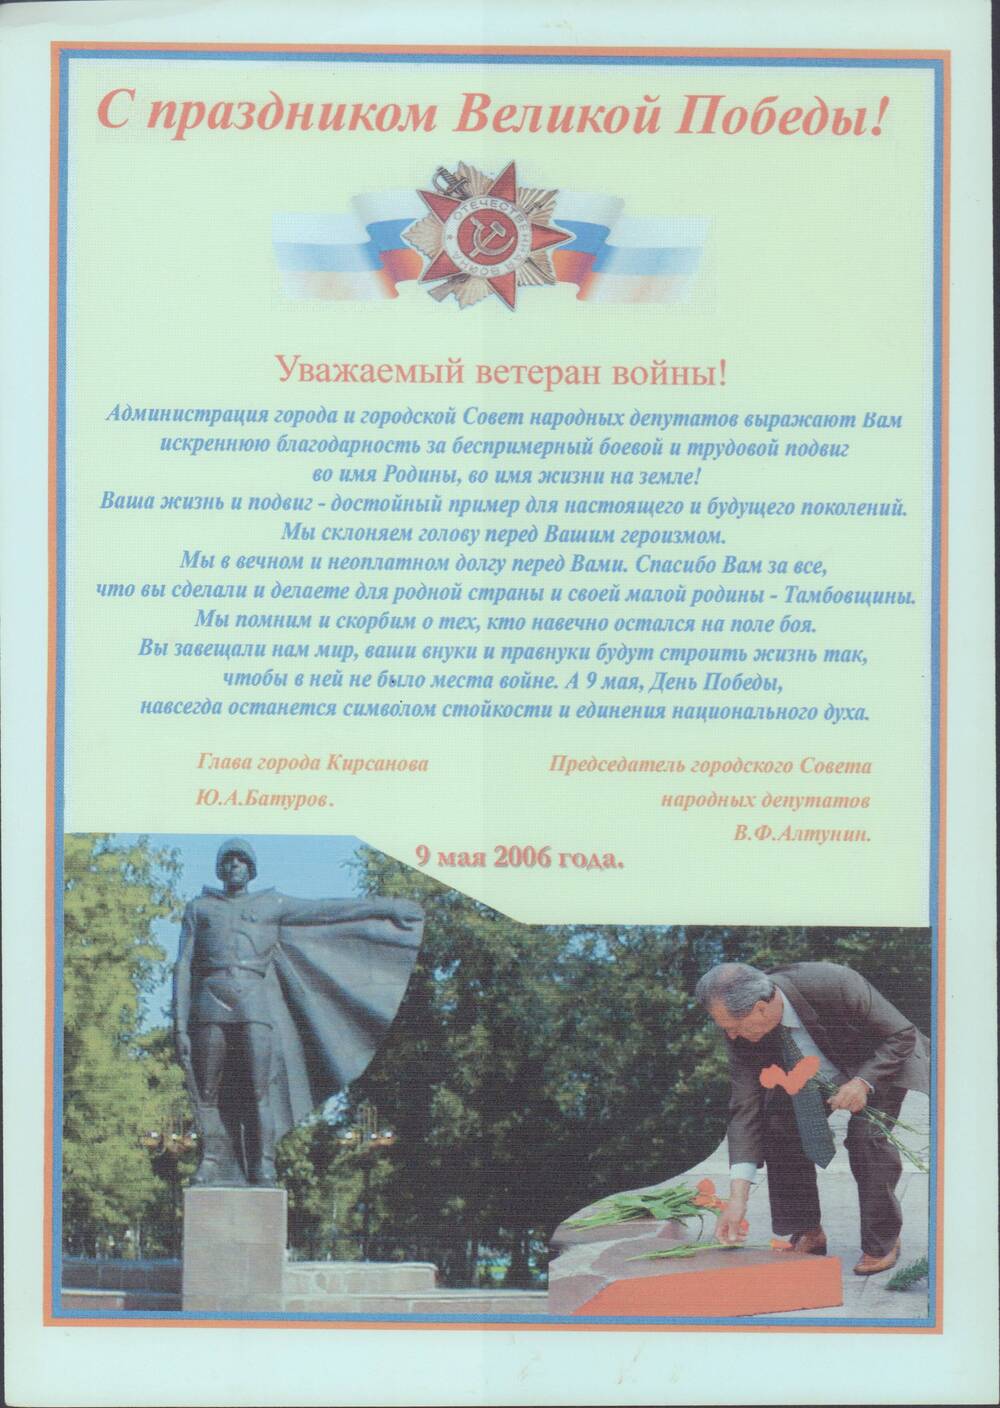 Благодарственное письмо Каравичеву Василию Федоровичу, за безпримерный боевой и трудовой подвиг во имя Родины